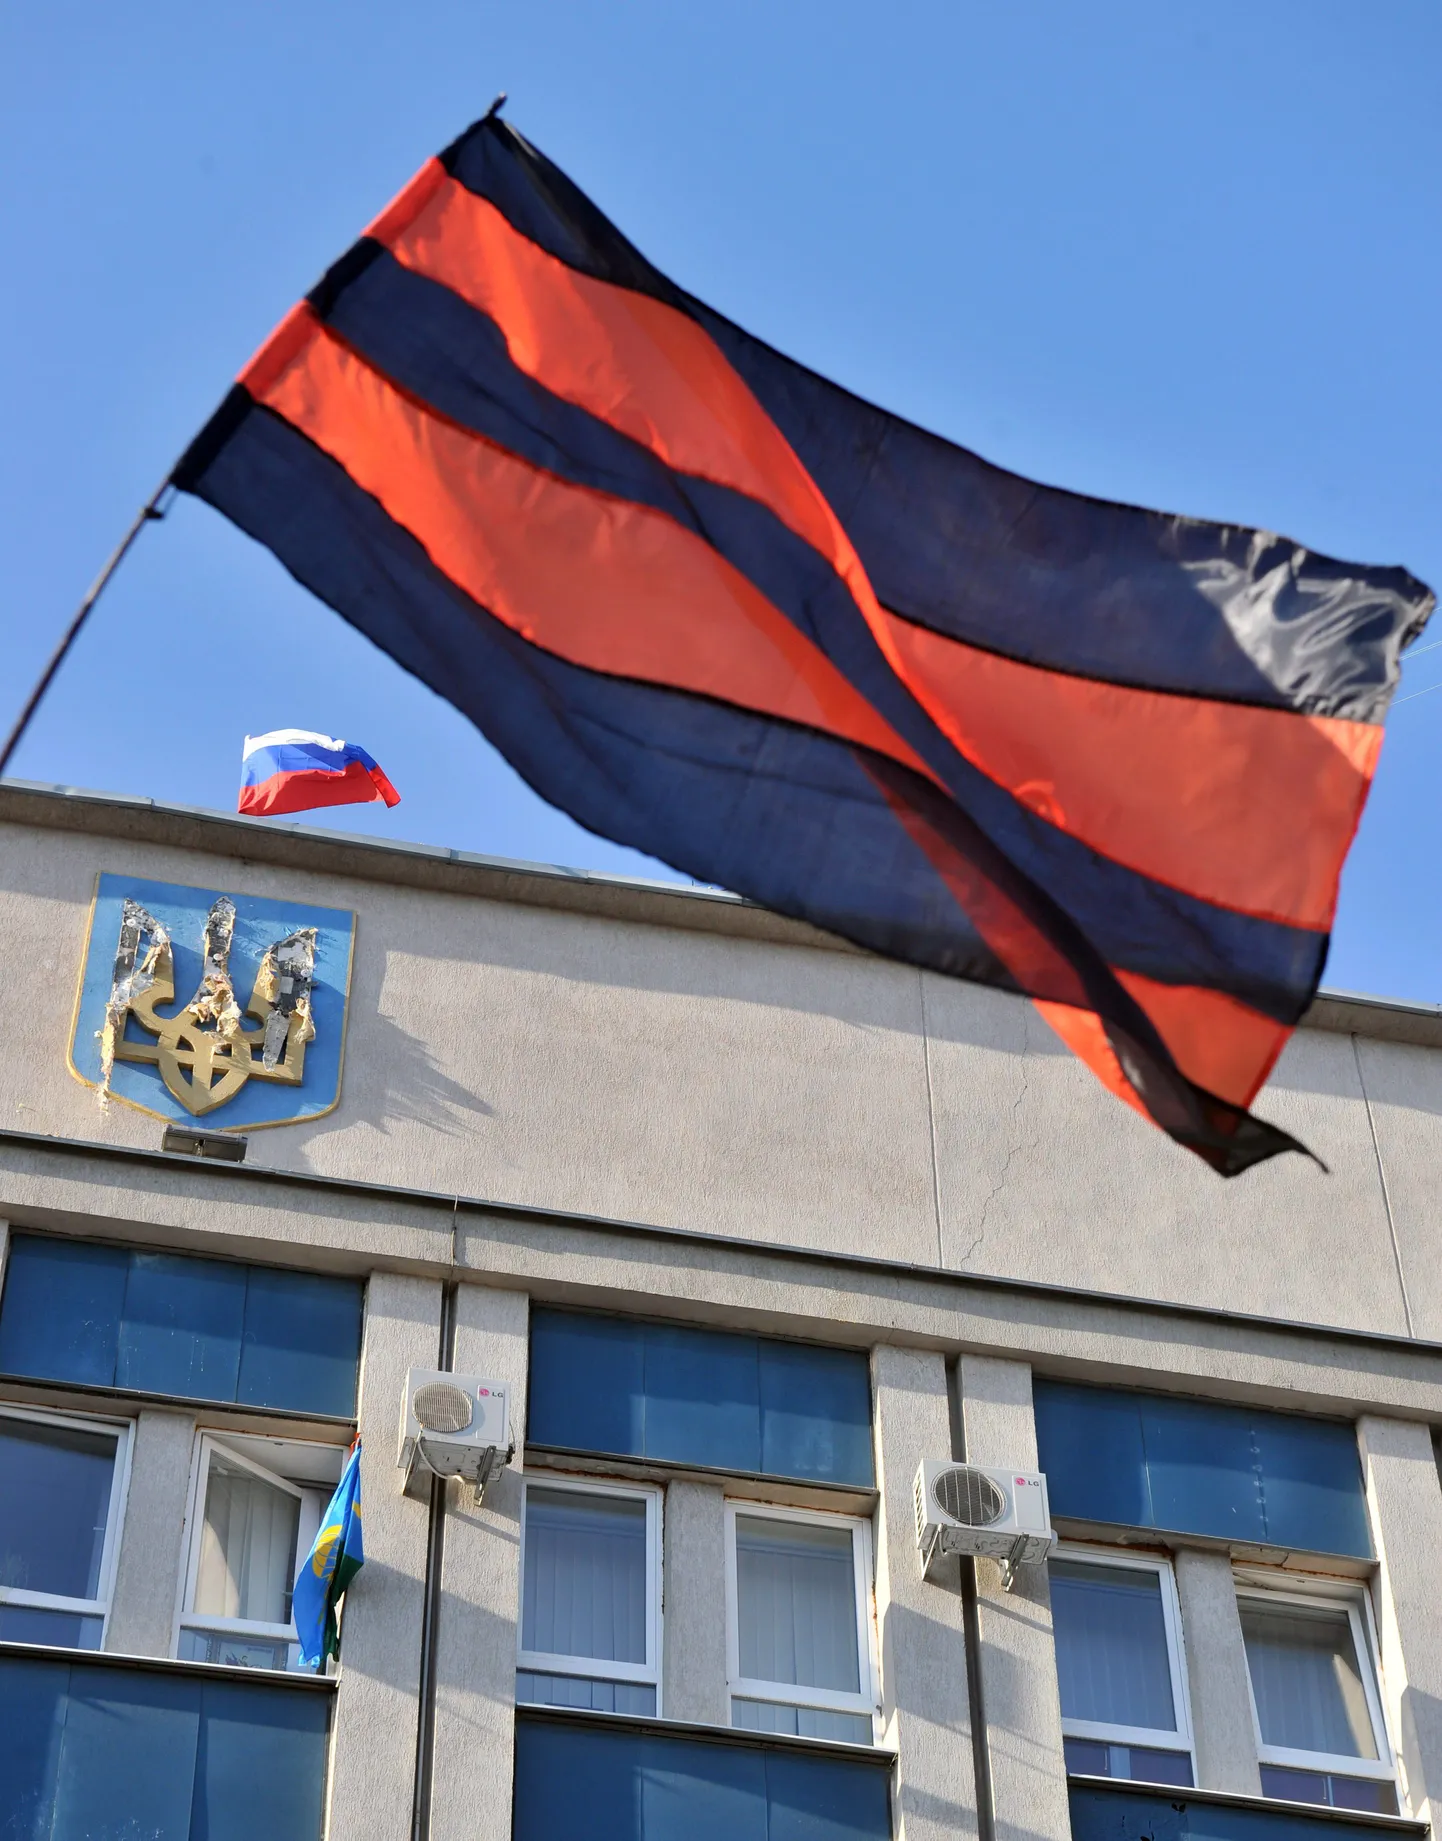 Venemeelse opositsiooni ja Venemaa lipud Luganskis julgeoleketeenistuse hoone juures ja hoonel. Akmast on välja torgatud Ukraina lipp.